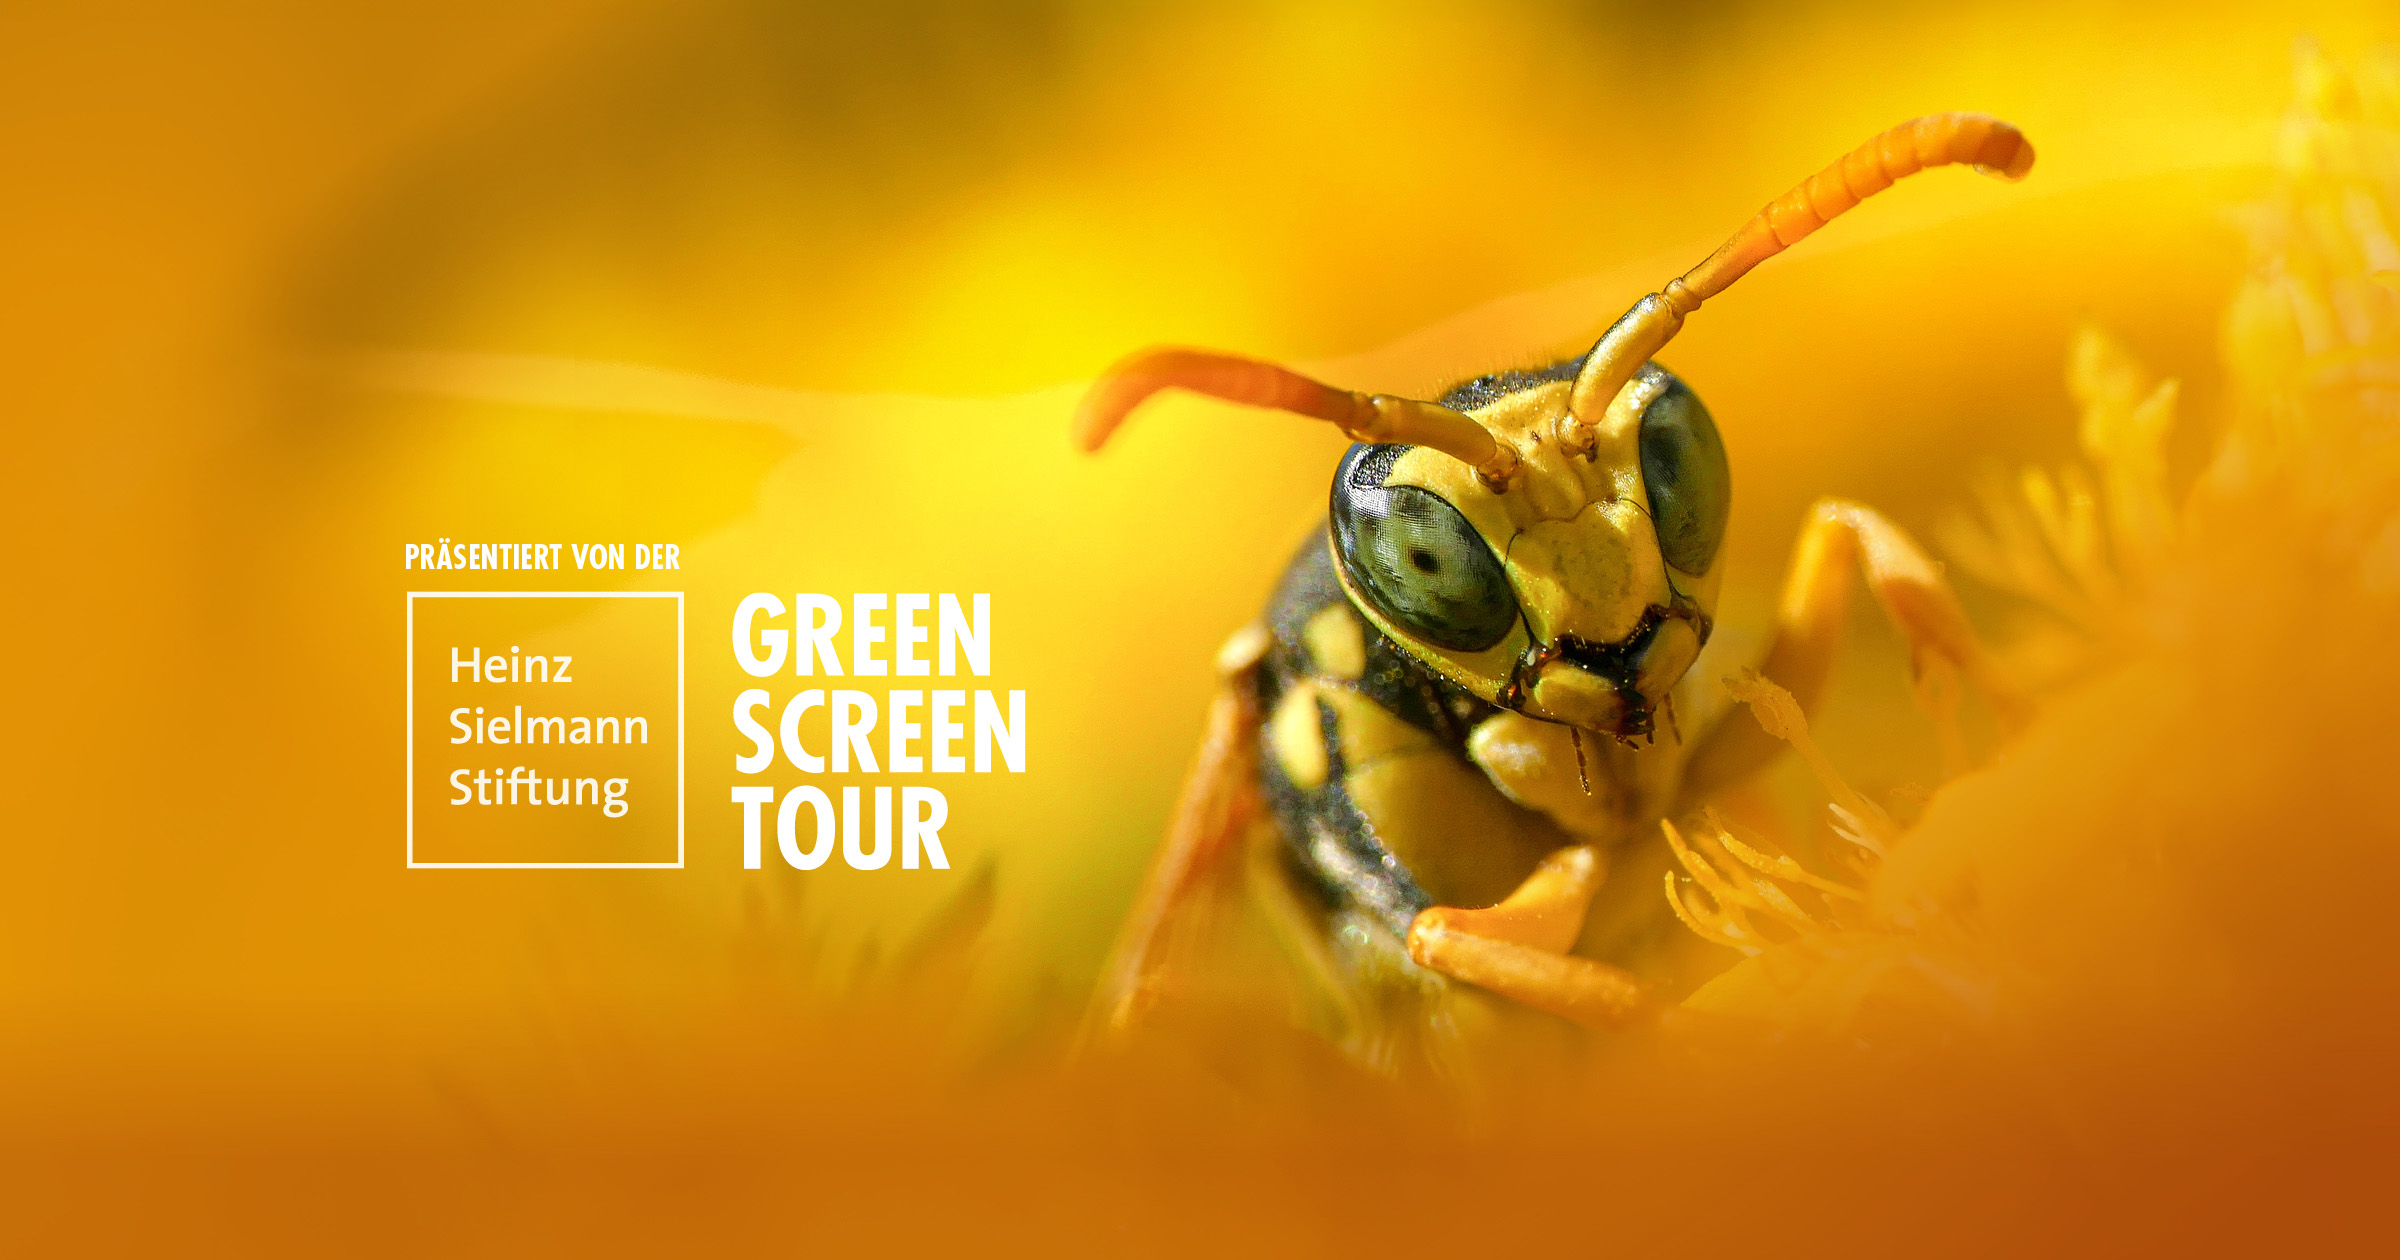 Biene in Nahaufnahme mit Logo der Green Screen Tour